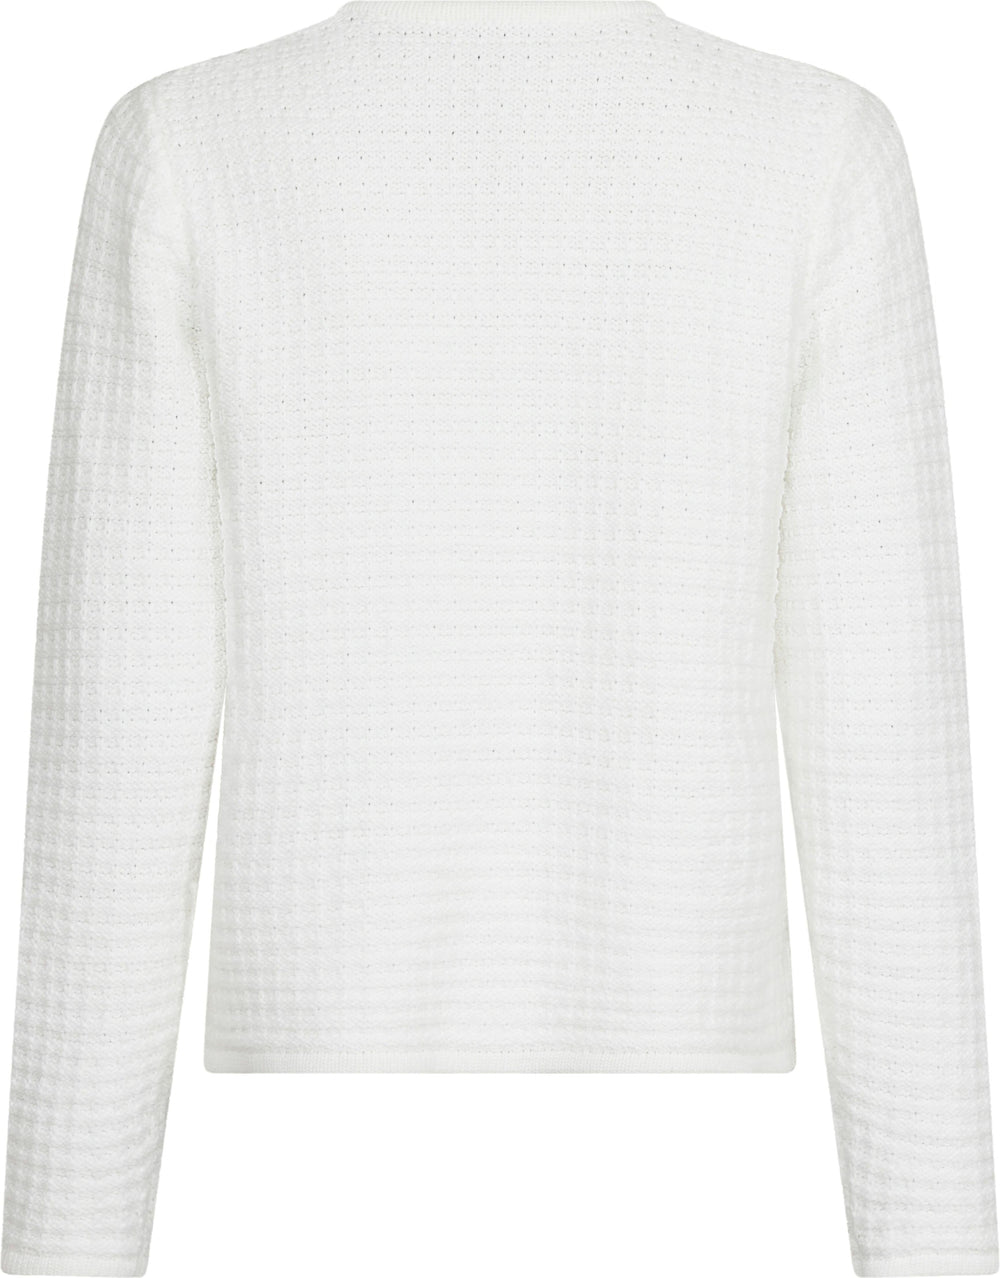 Neo Noir - Limone Knit Jacket - White